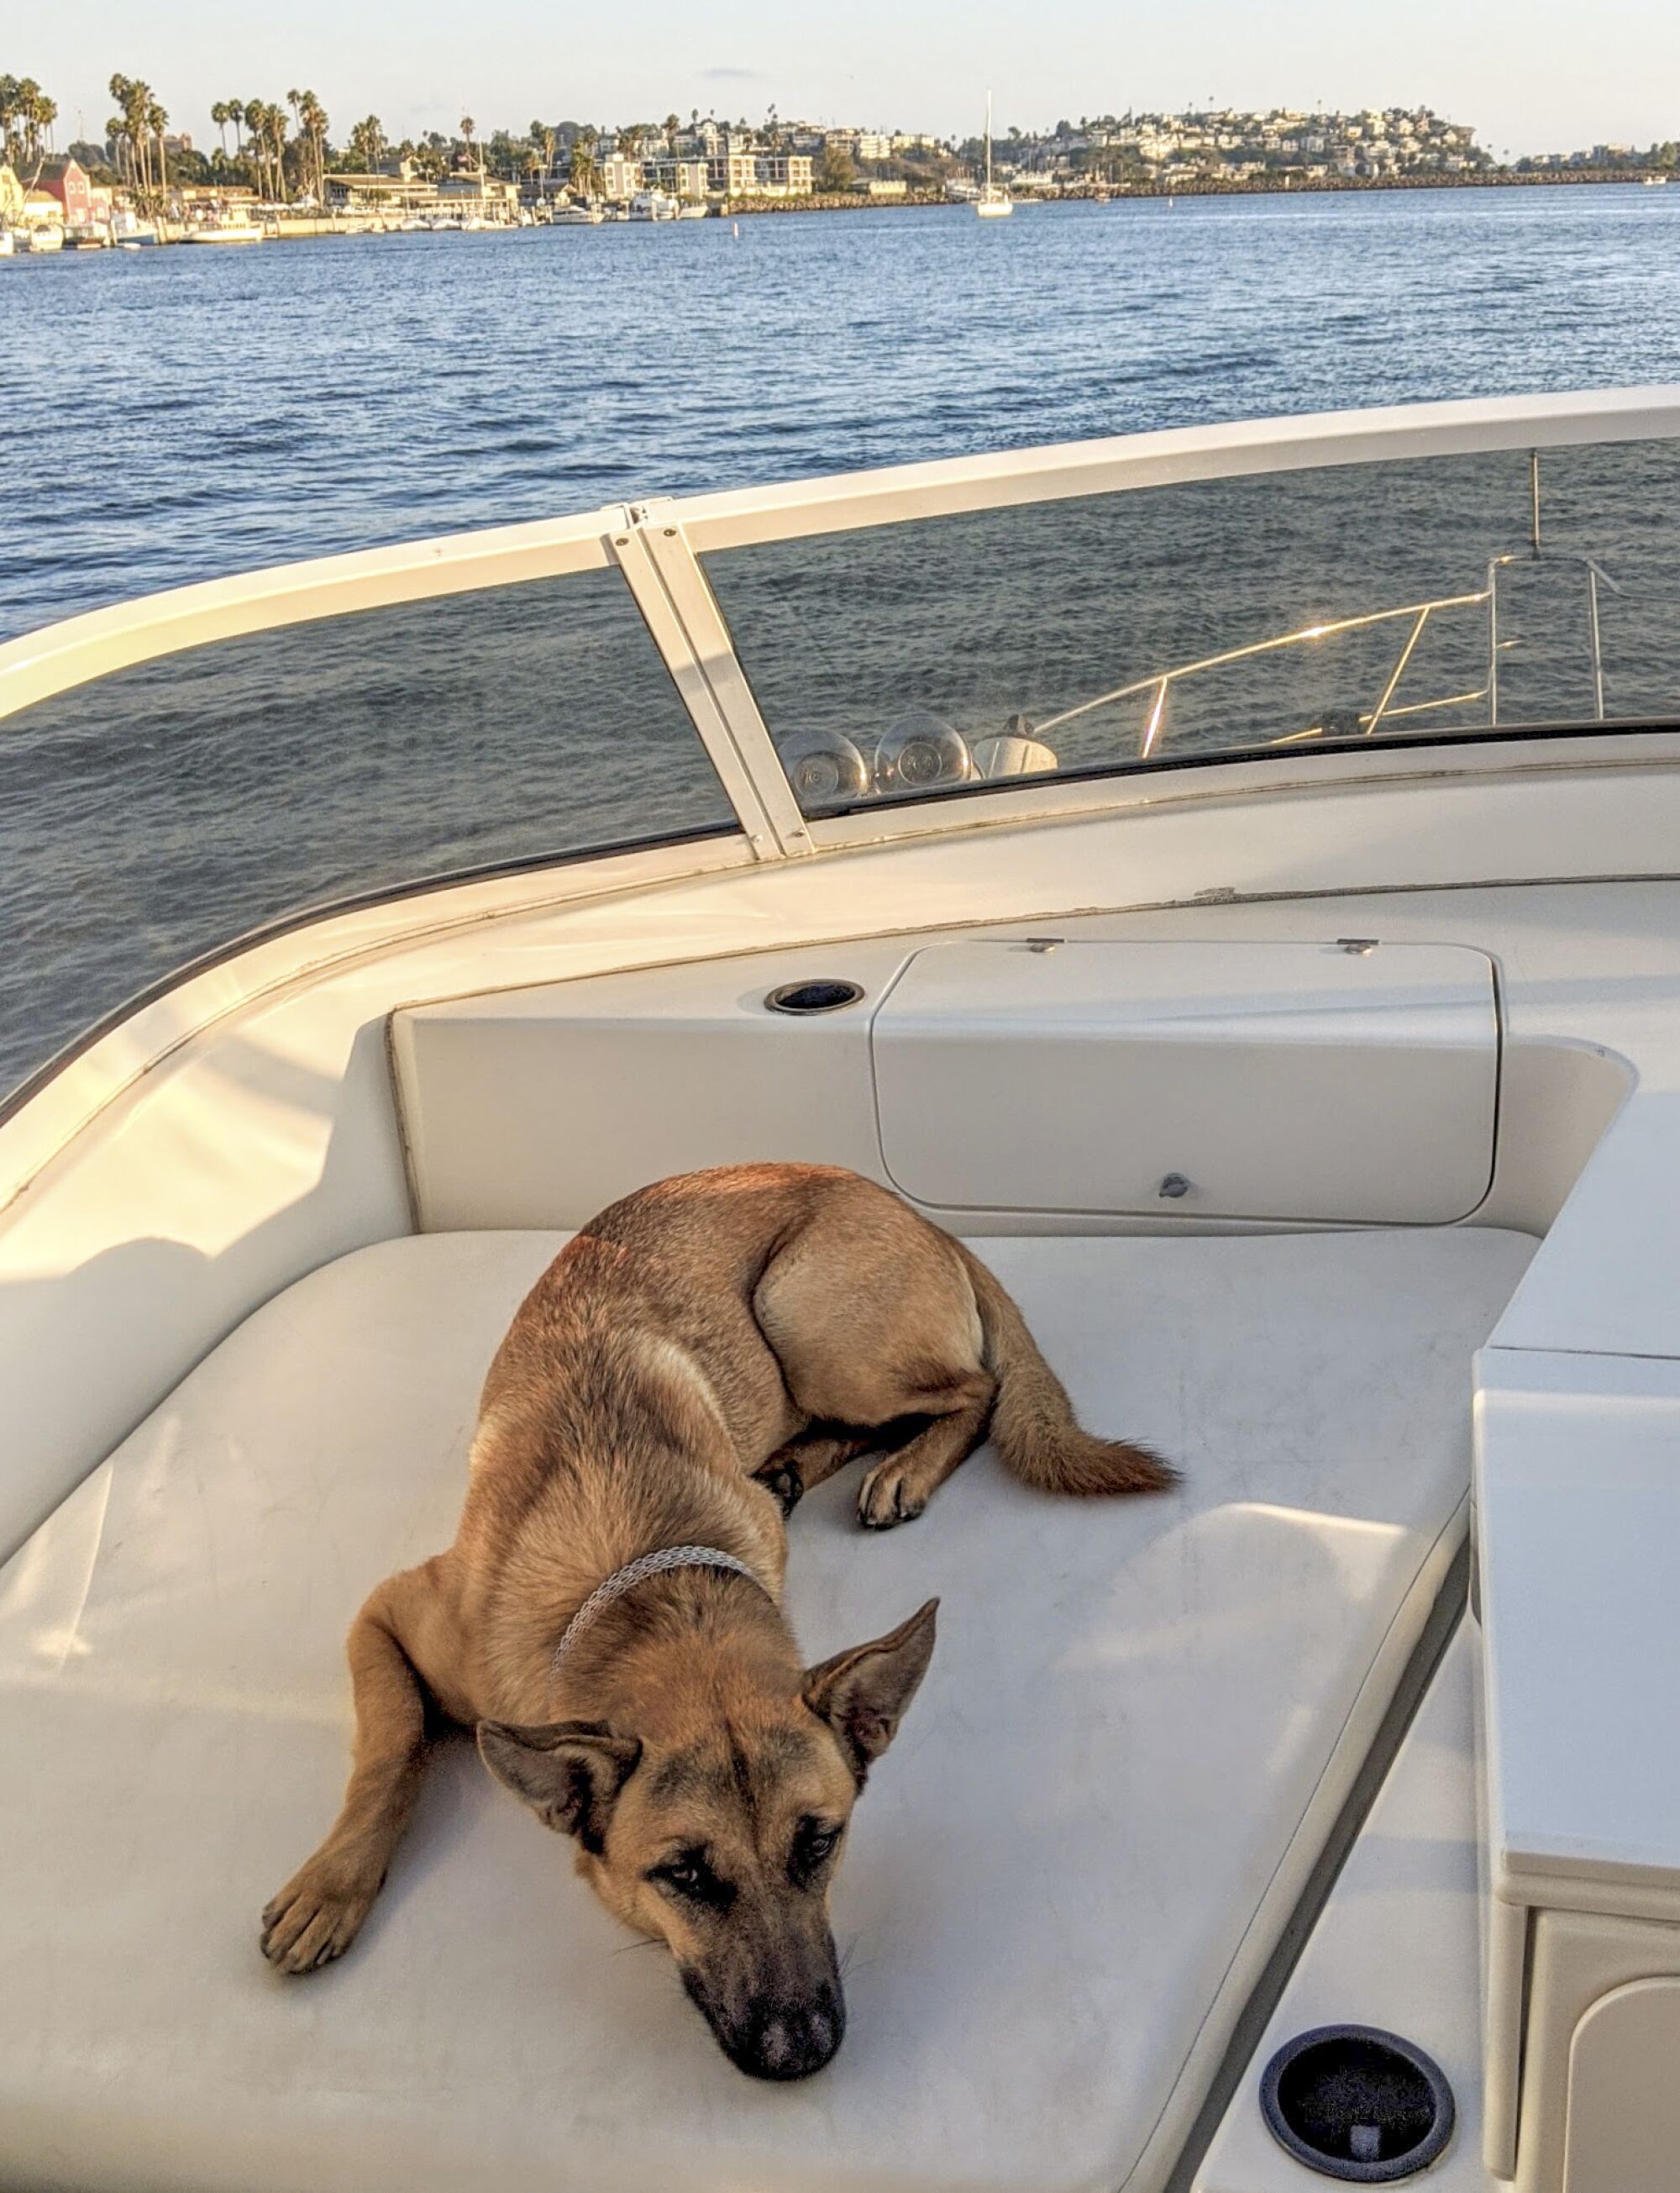 A dog on a yacht